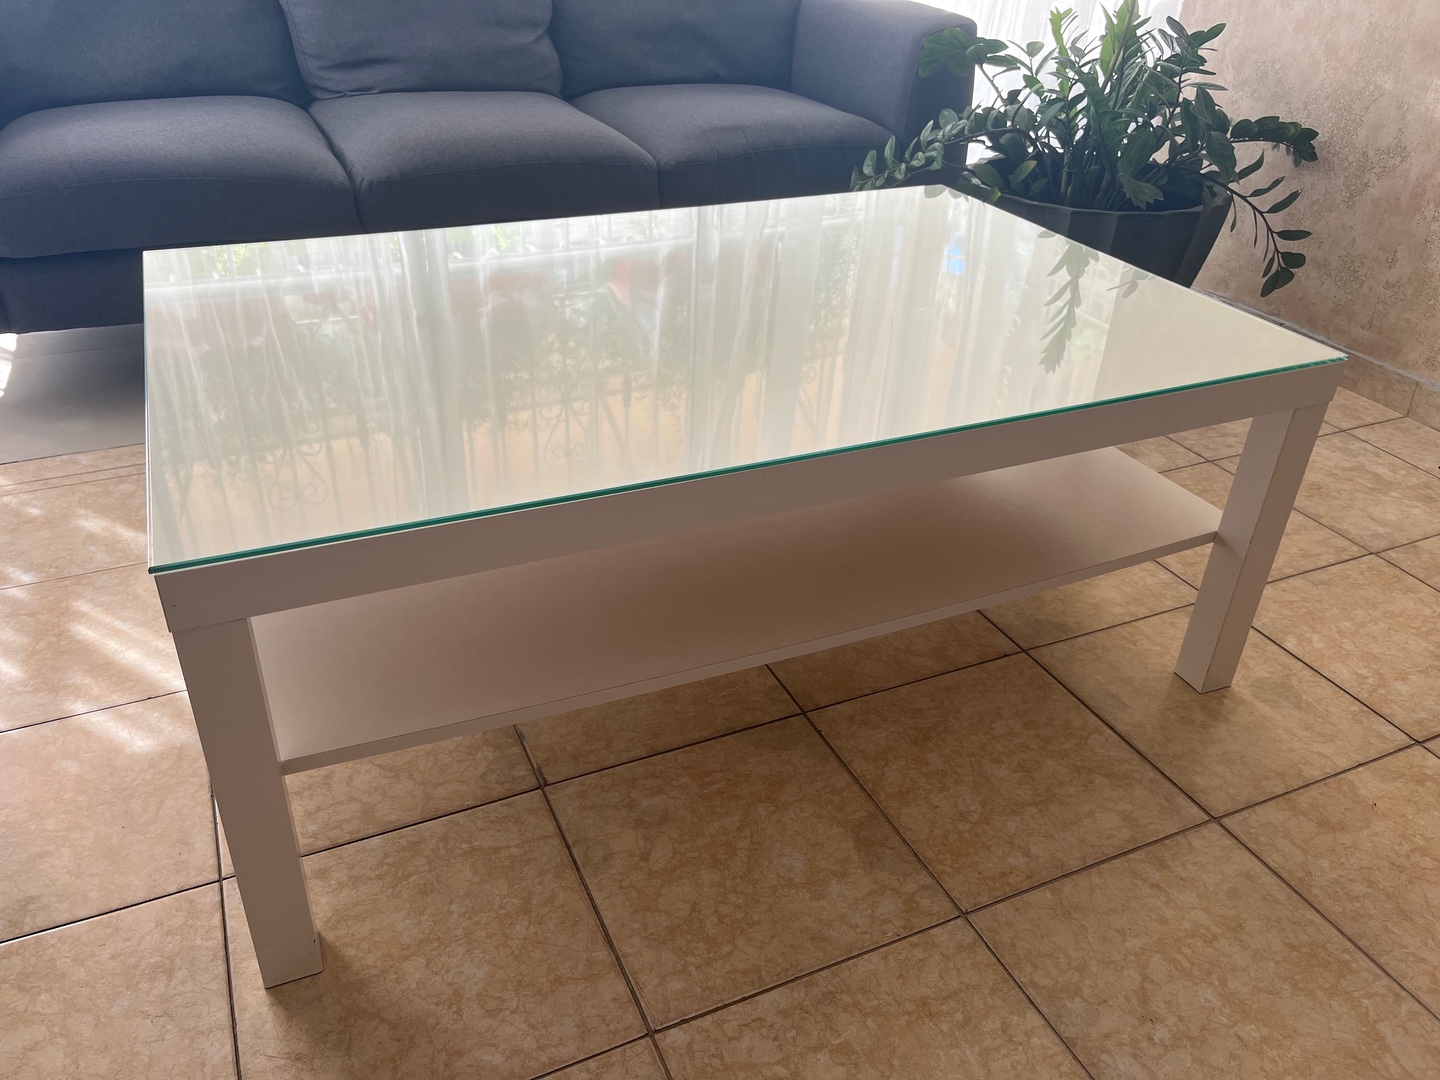 muebles y colchones - Vendo mesa centro de sala con tope cristal